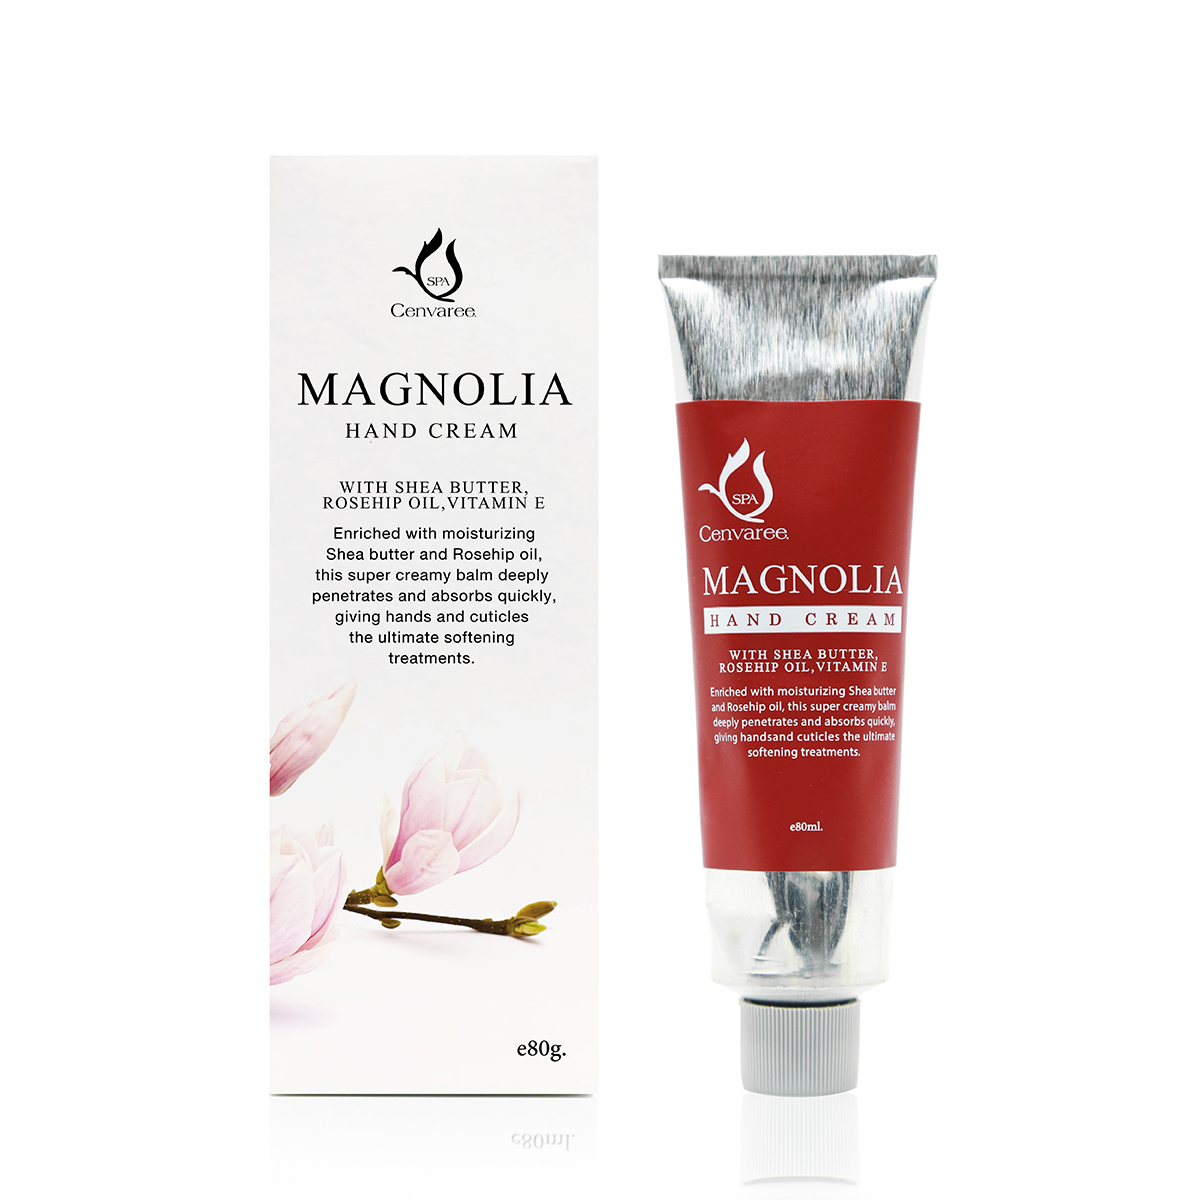  Magnolia hand cream